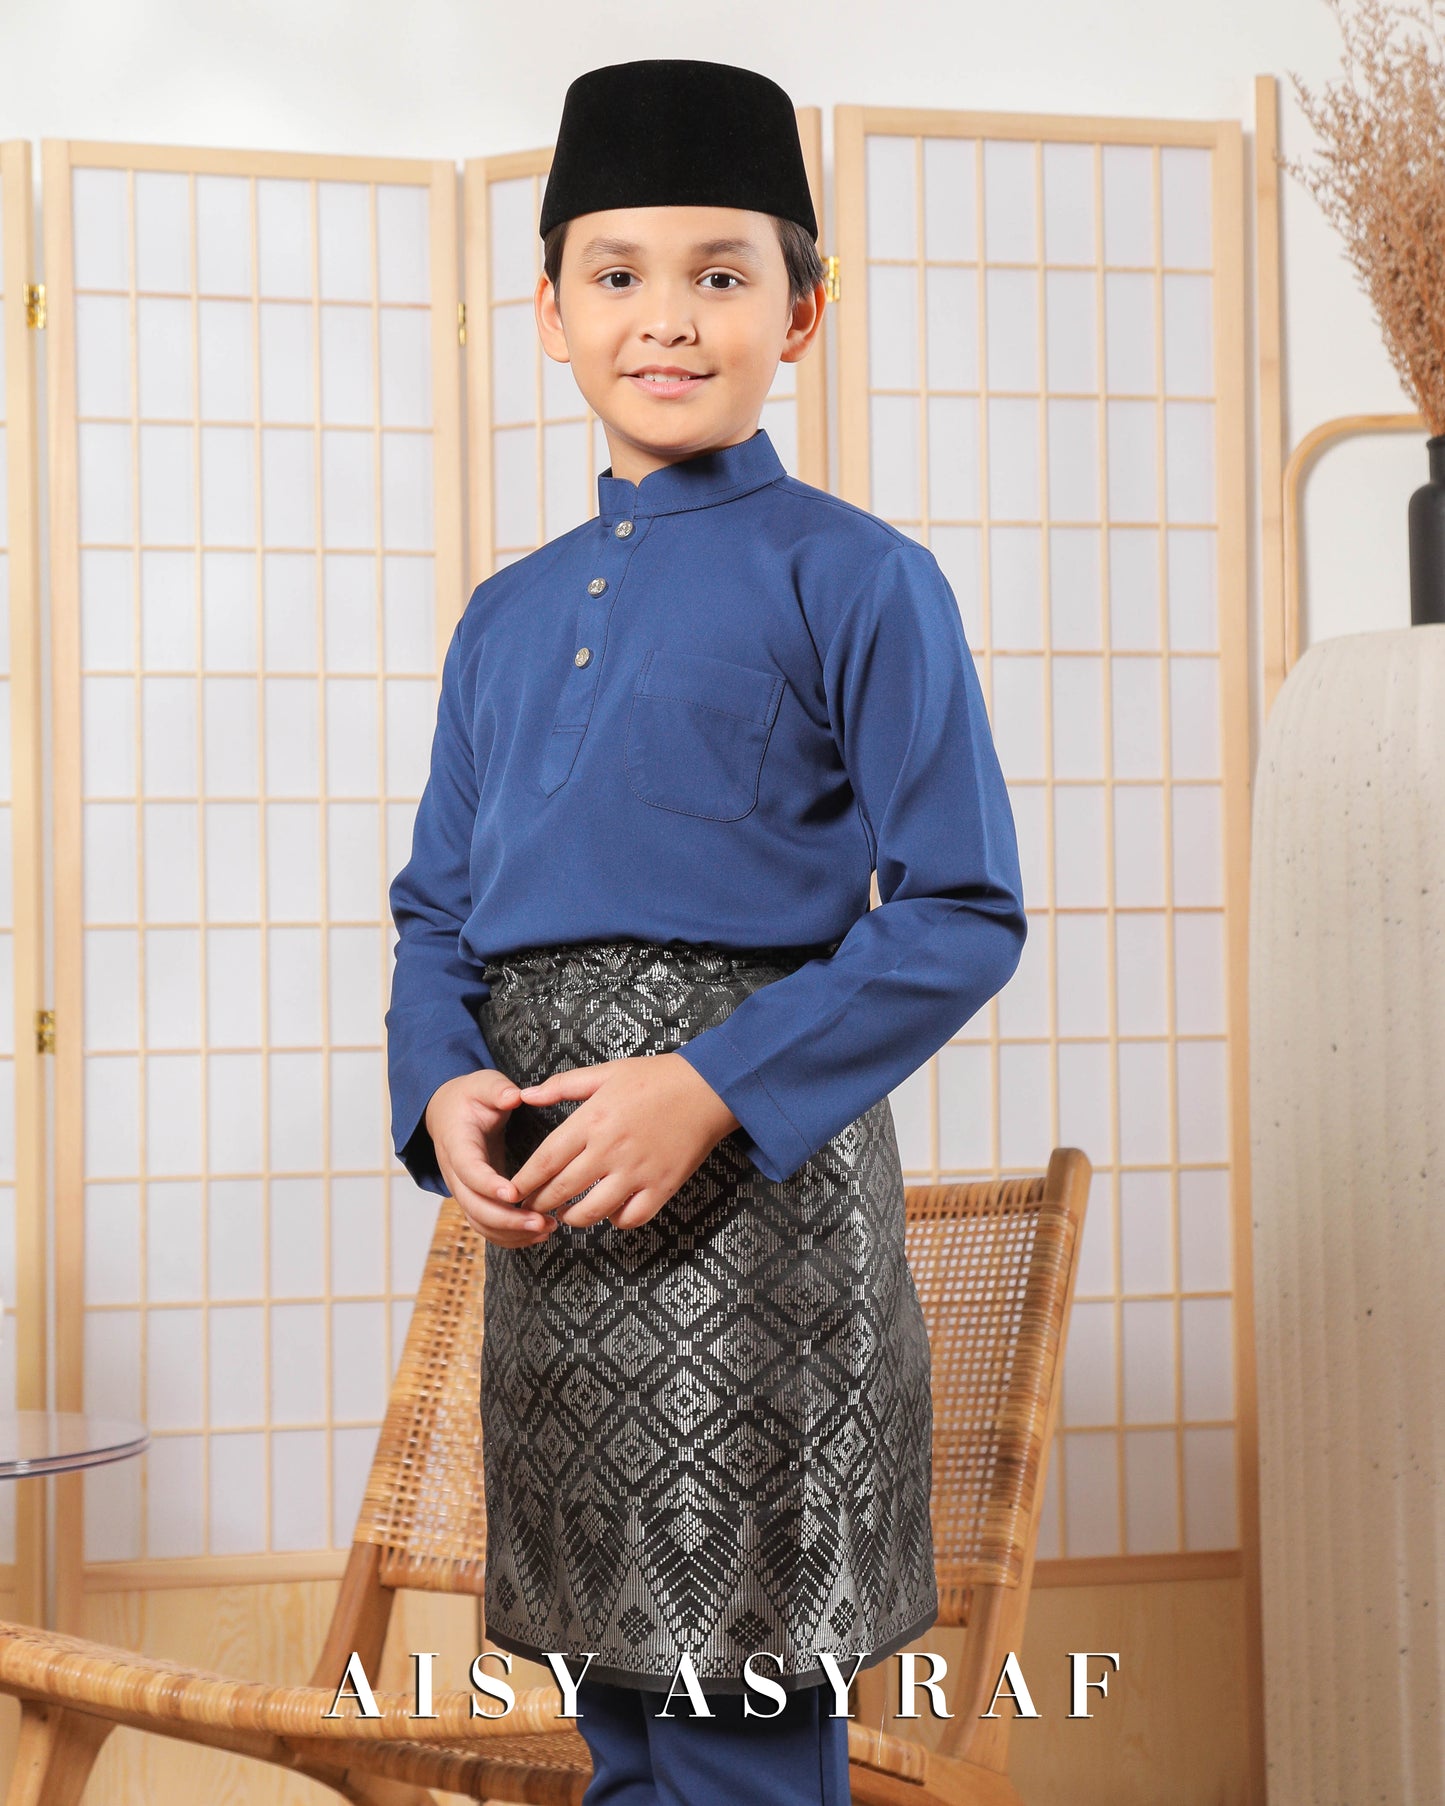 Baju Melayu Zaidan Kids - Denim Blue